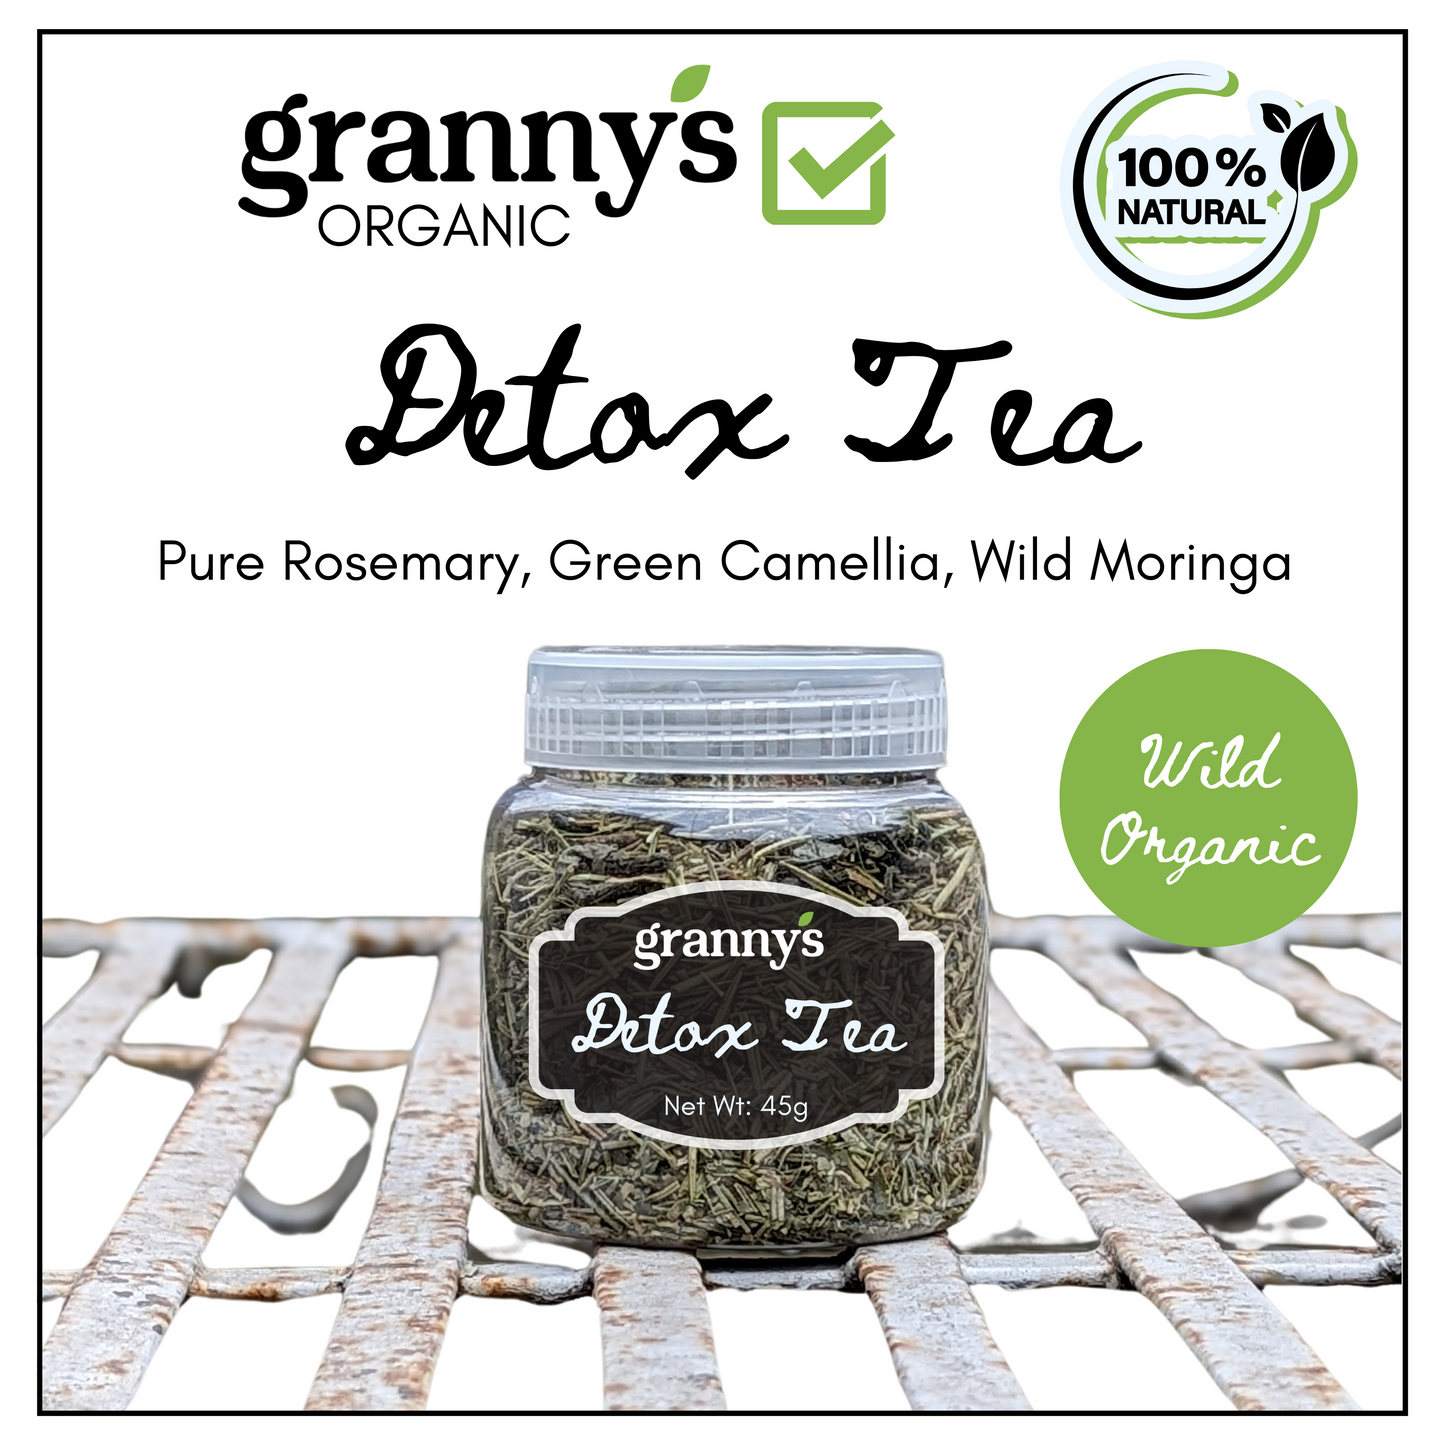 Granny's Detox Tea